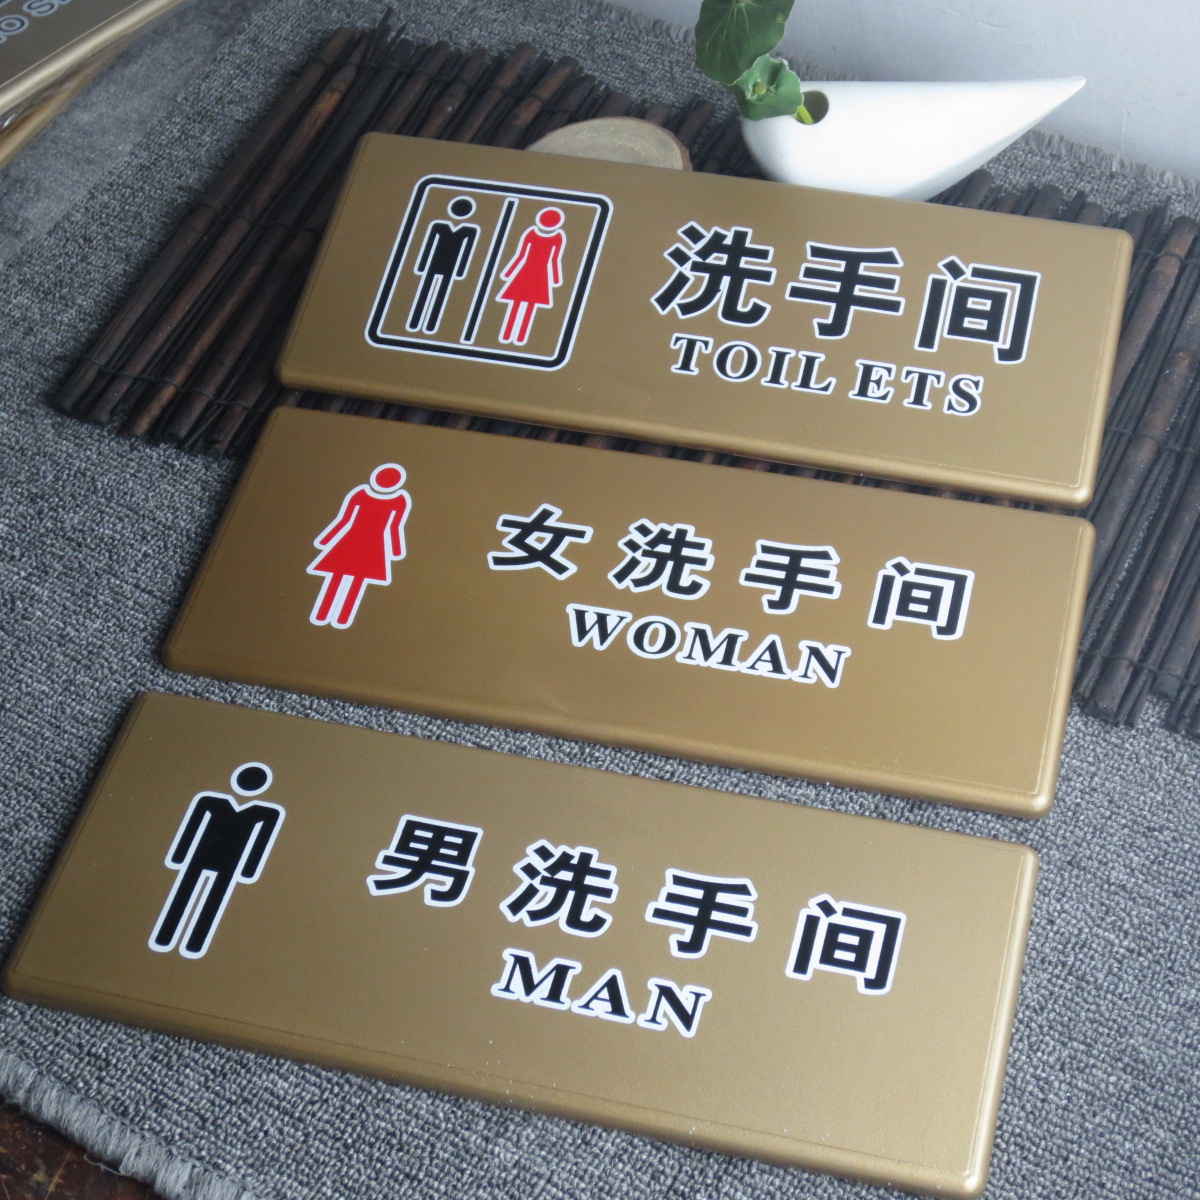 门牌男女洗手间标牌卫生间指示牌厕所标识牌标示牌标志 酒店公司